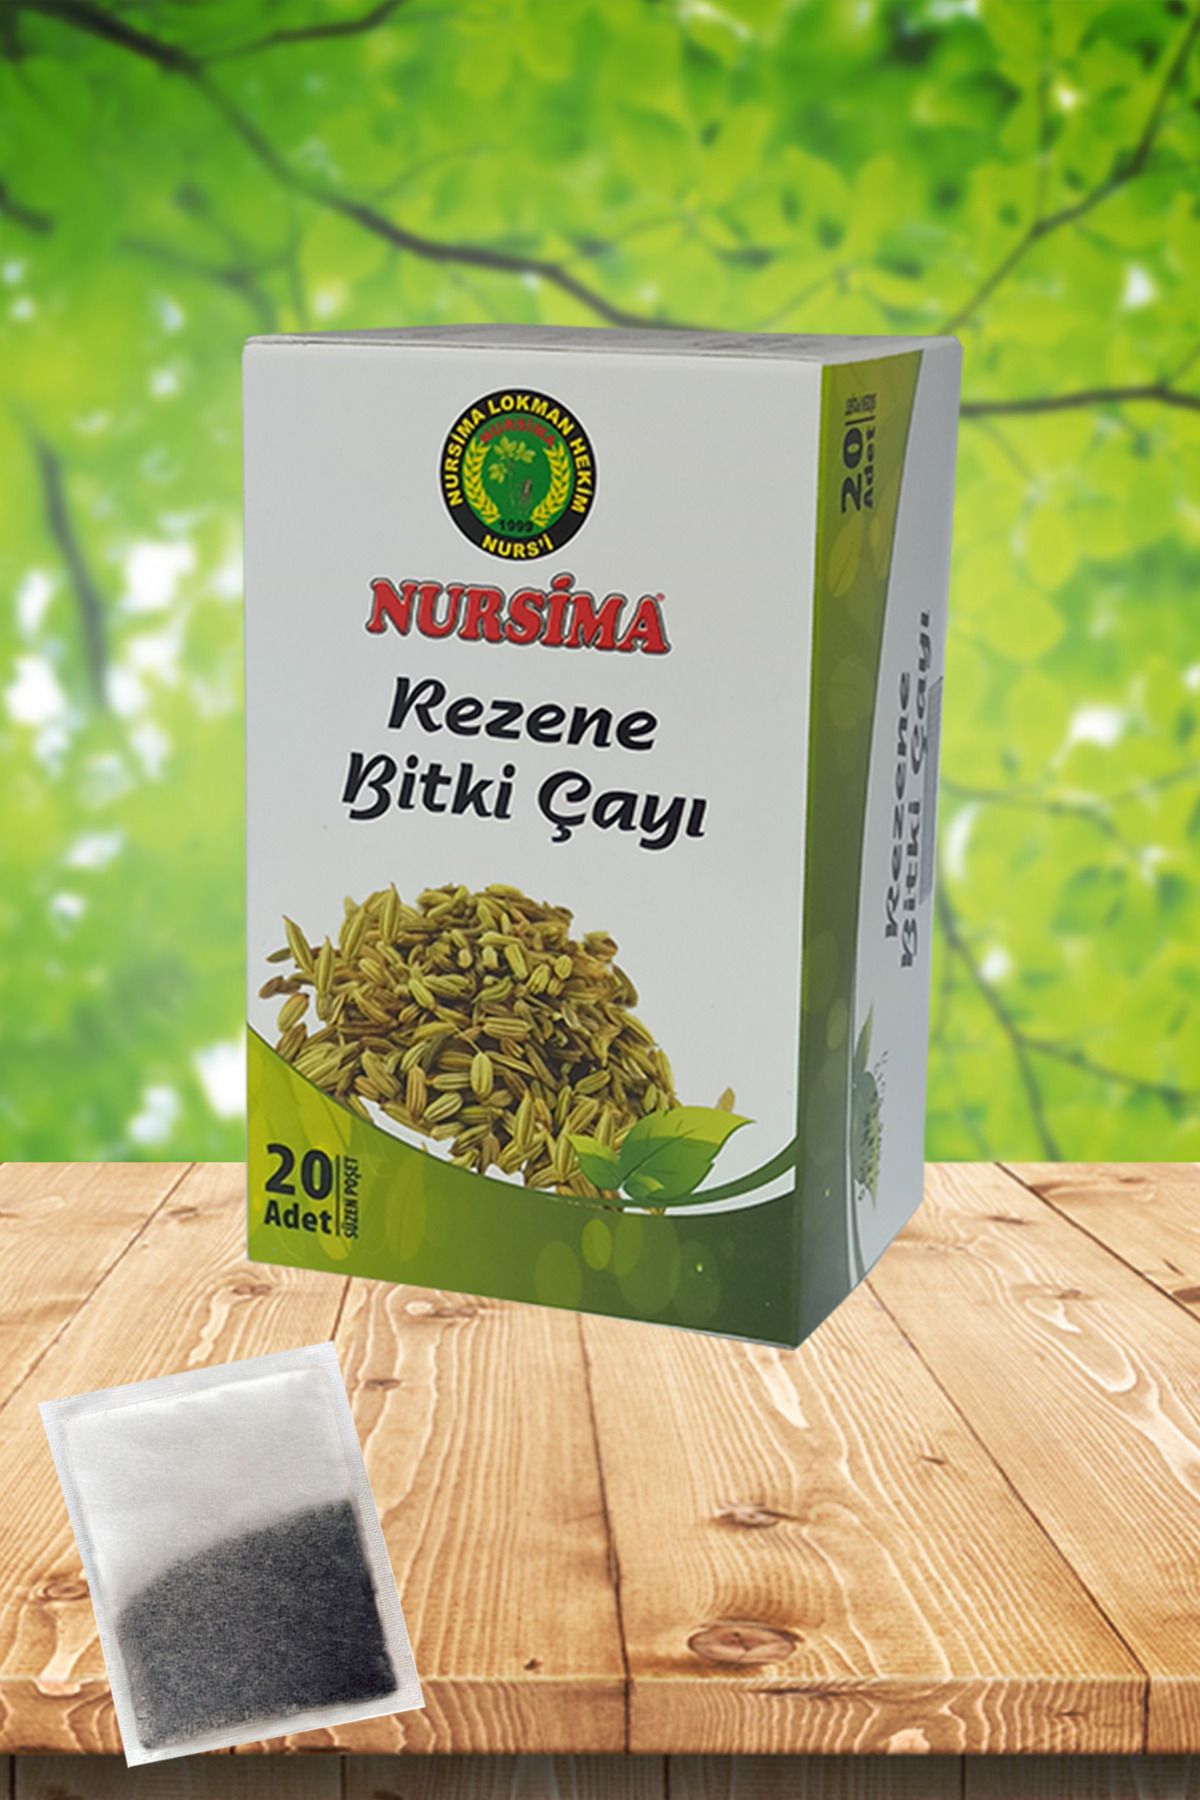 Nursima Rezene Bitki Çayı 20 'li Süzen Poşet